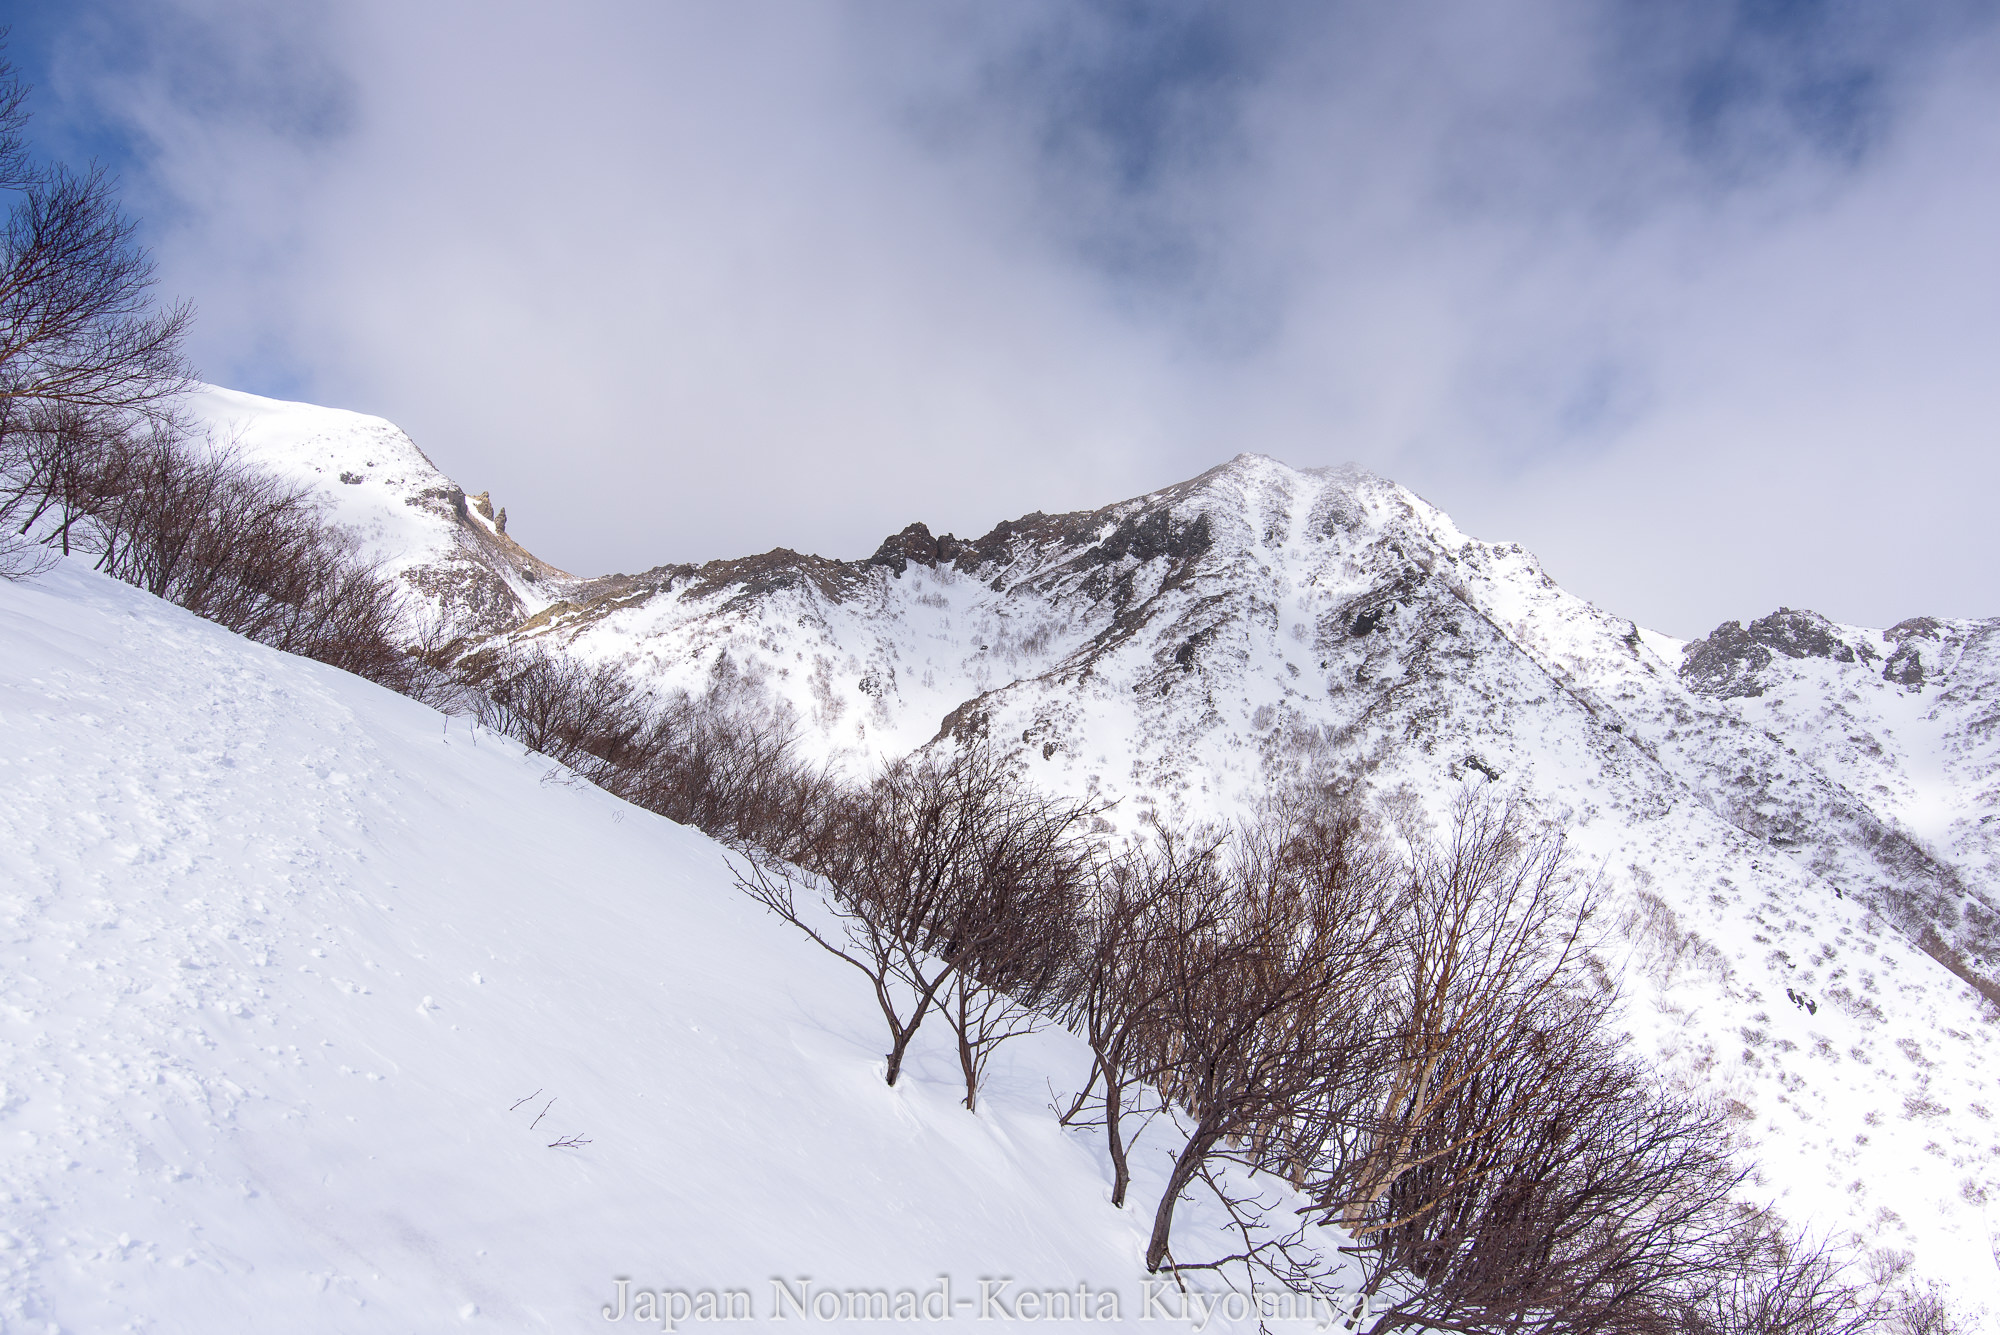 那須連山 茶臼岳 雪山登山 厳冬期 日帰り 那須冬の風物詩 強風 を越えて Japan Nomad